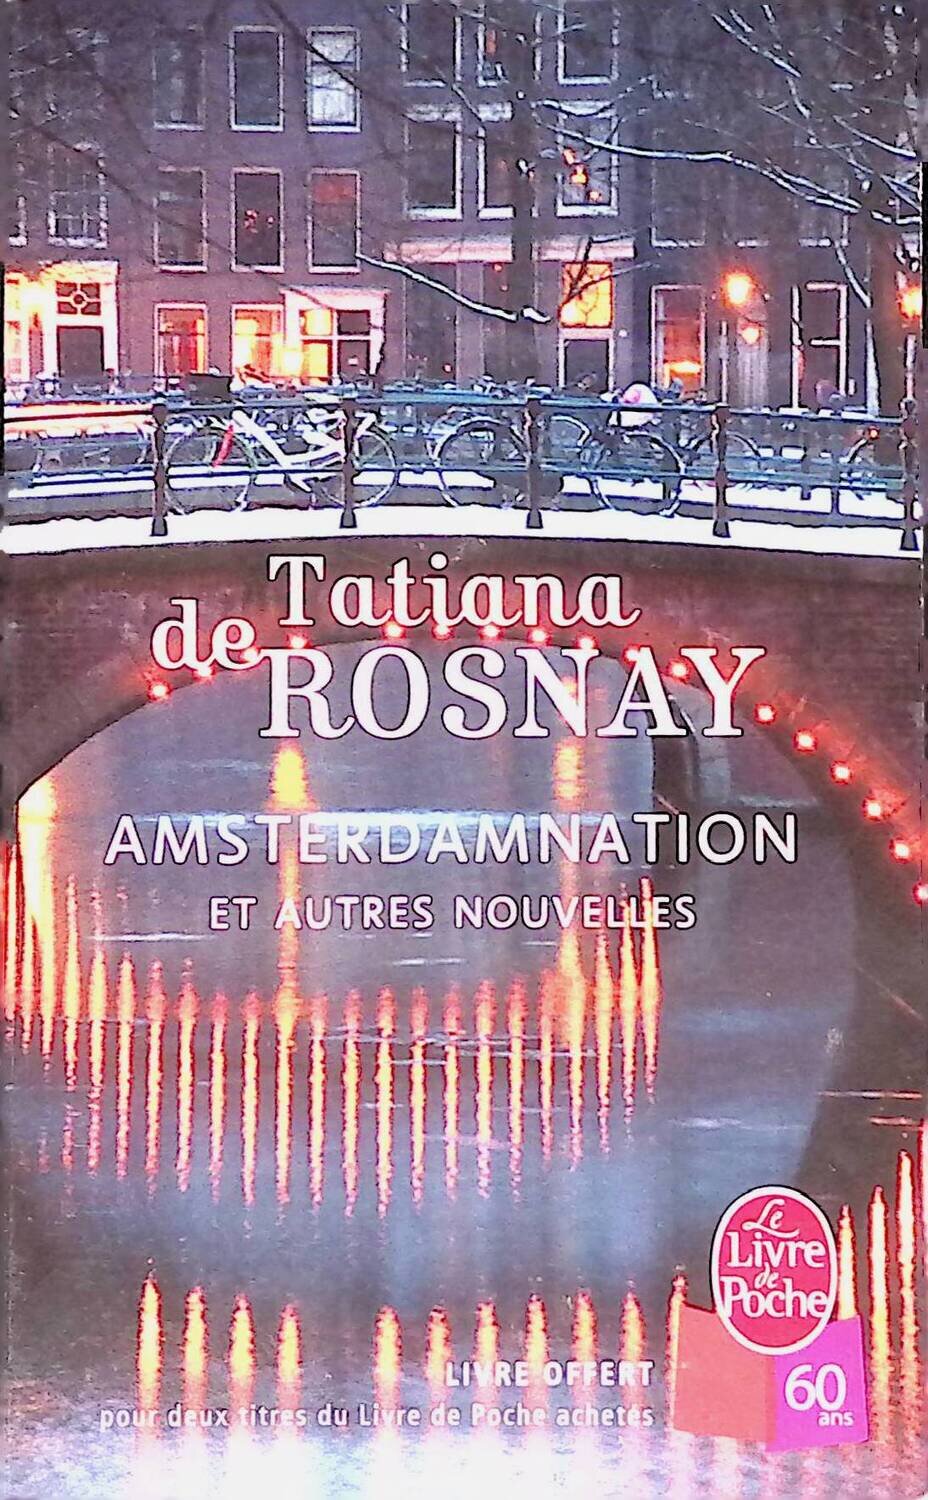 Amsterdamnation et autres nouvelles; de Rosnay Tatiana